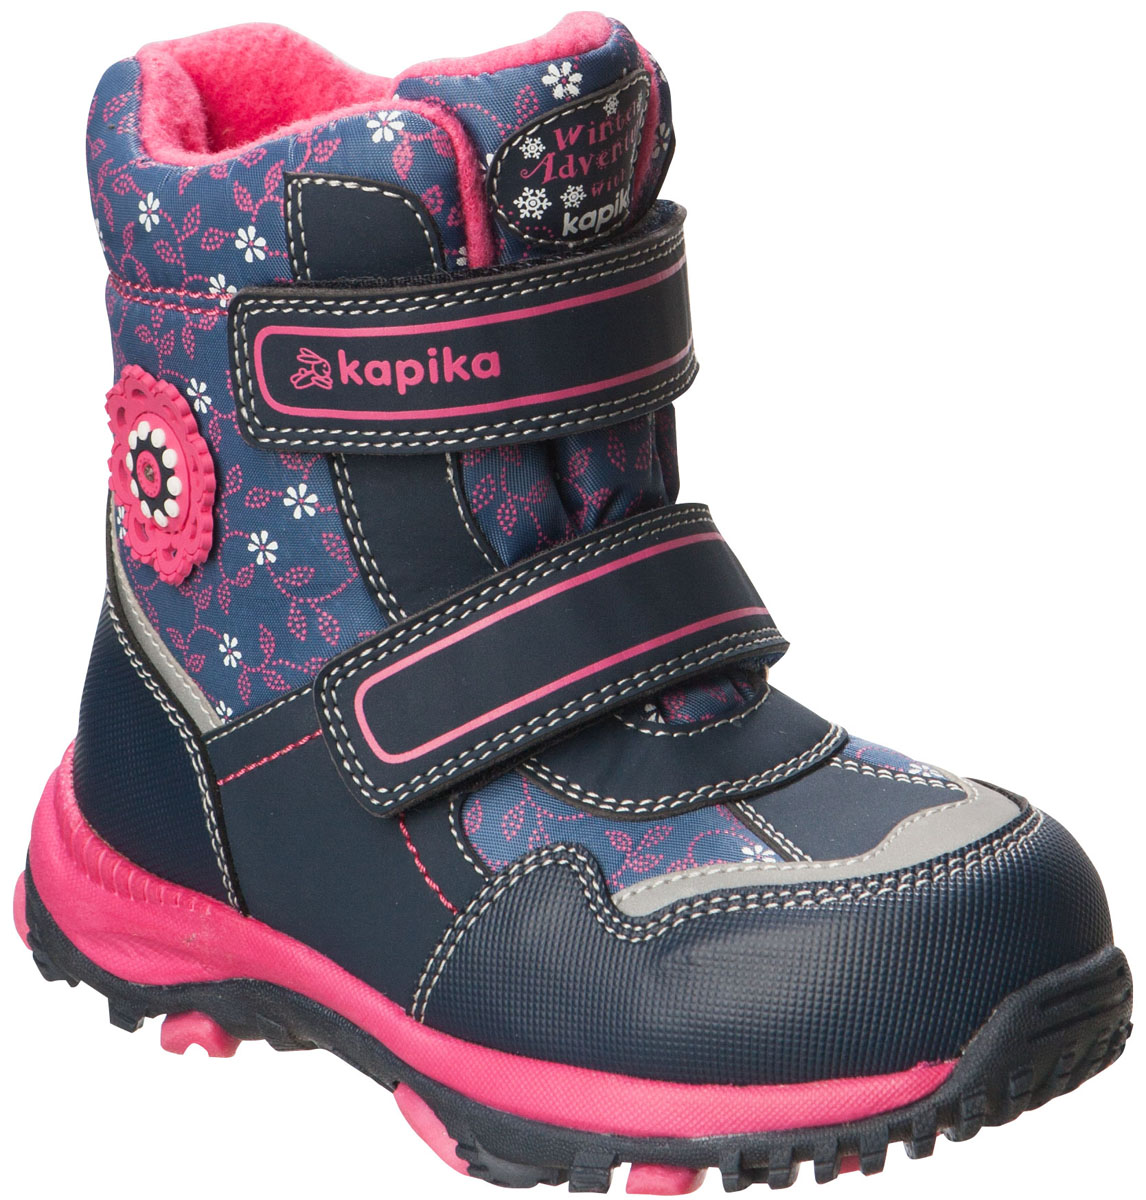 Ботинки для девочки Kapika, цвет: темно-синий. 41180-1. Размер 27